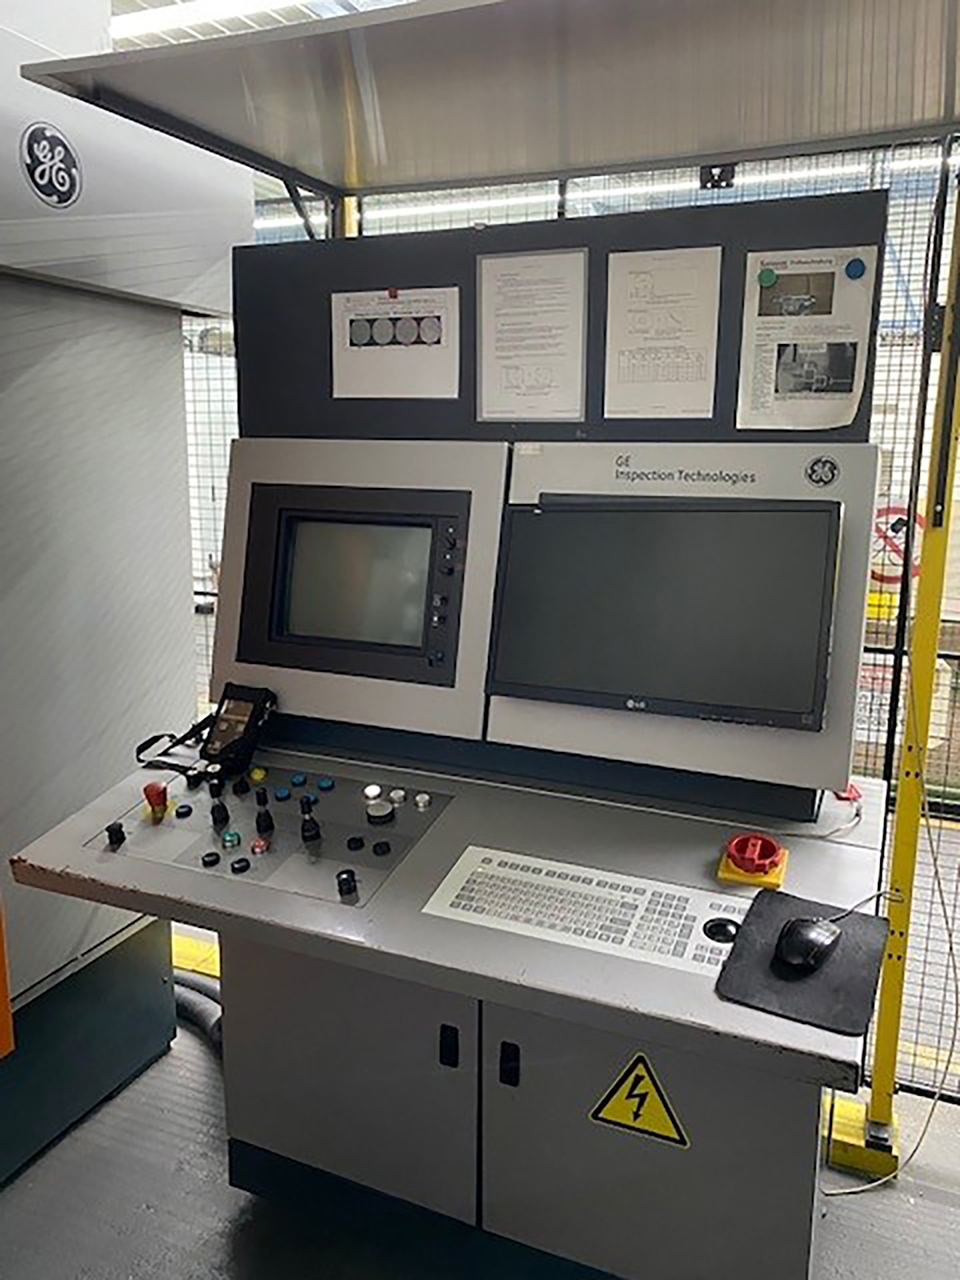 Kompaktowy system rentgenowski Seifert X Cube ZU2214, używany